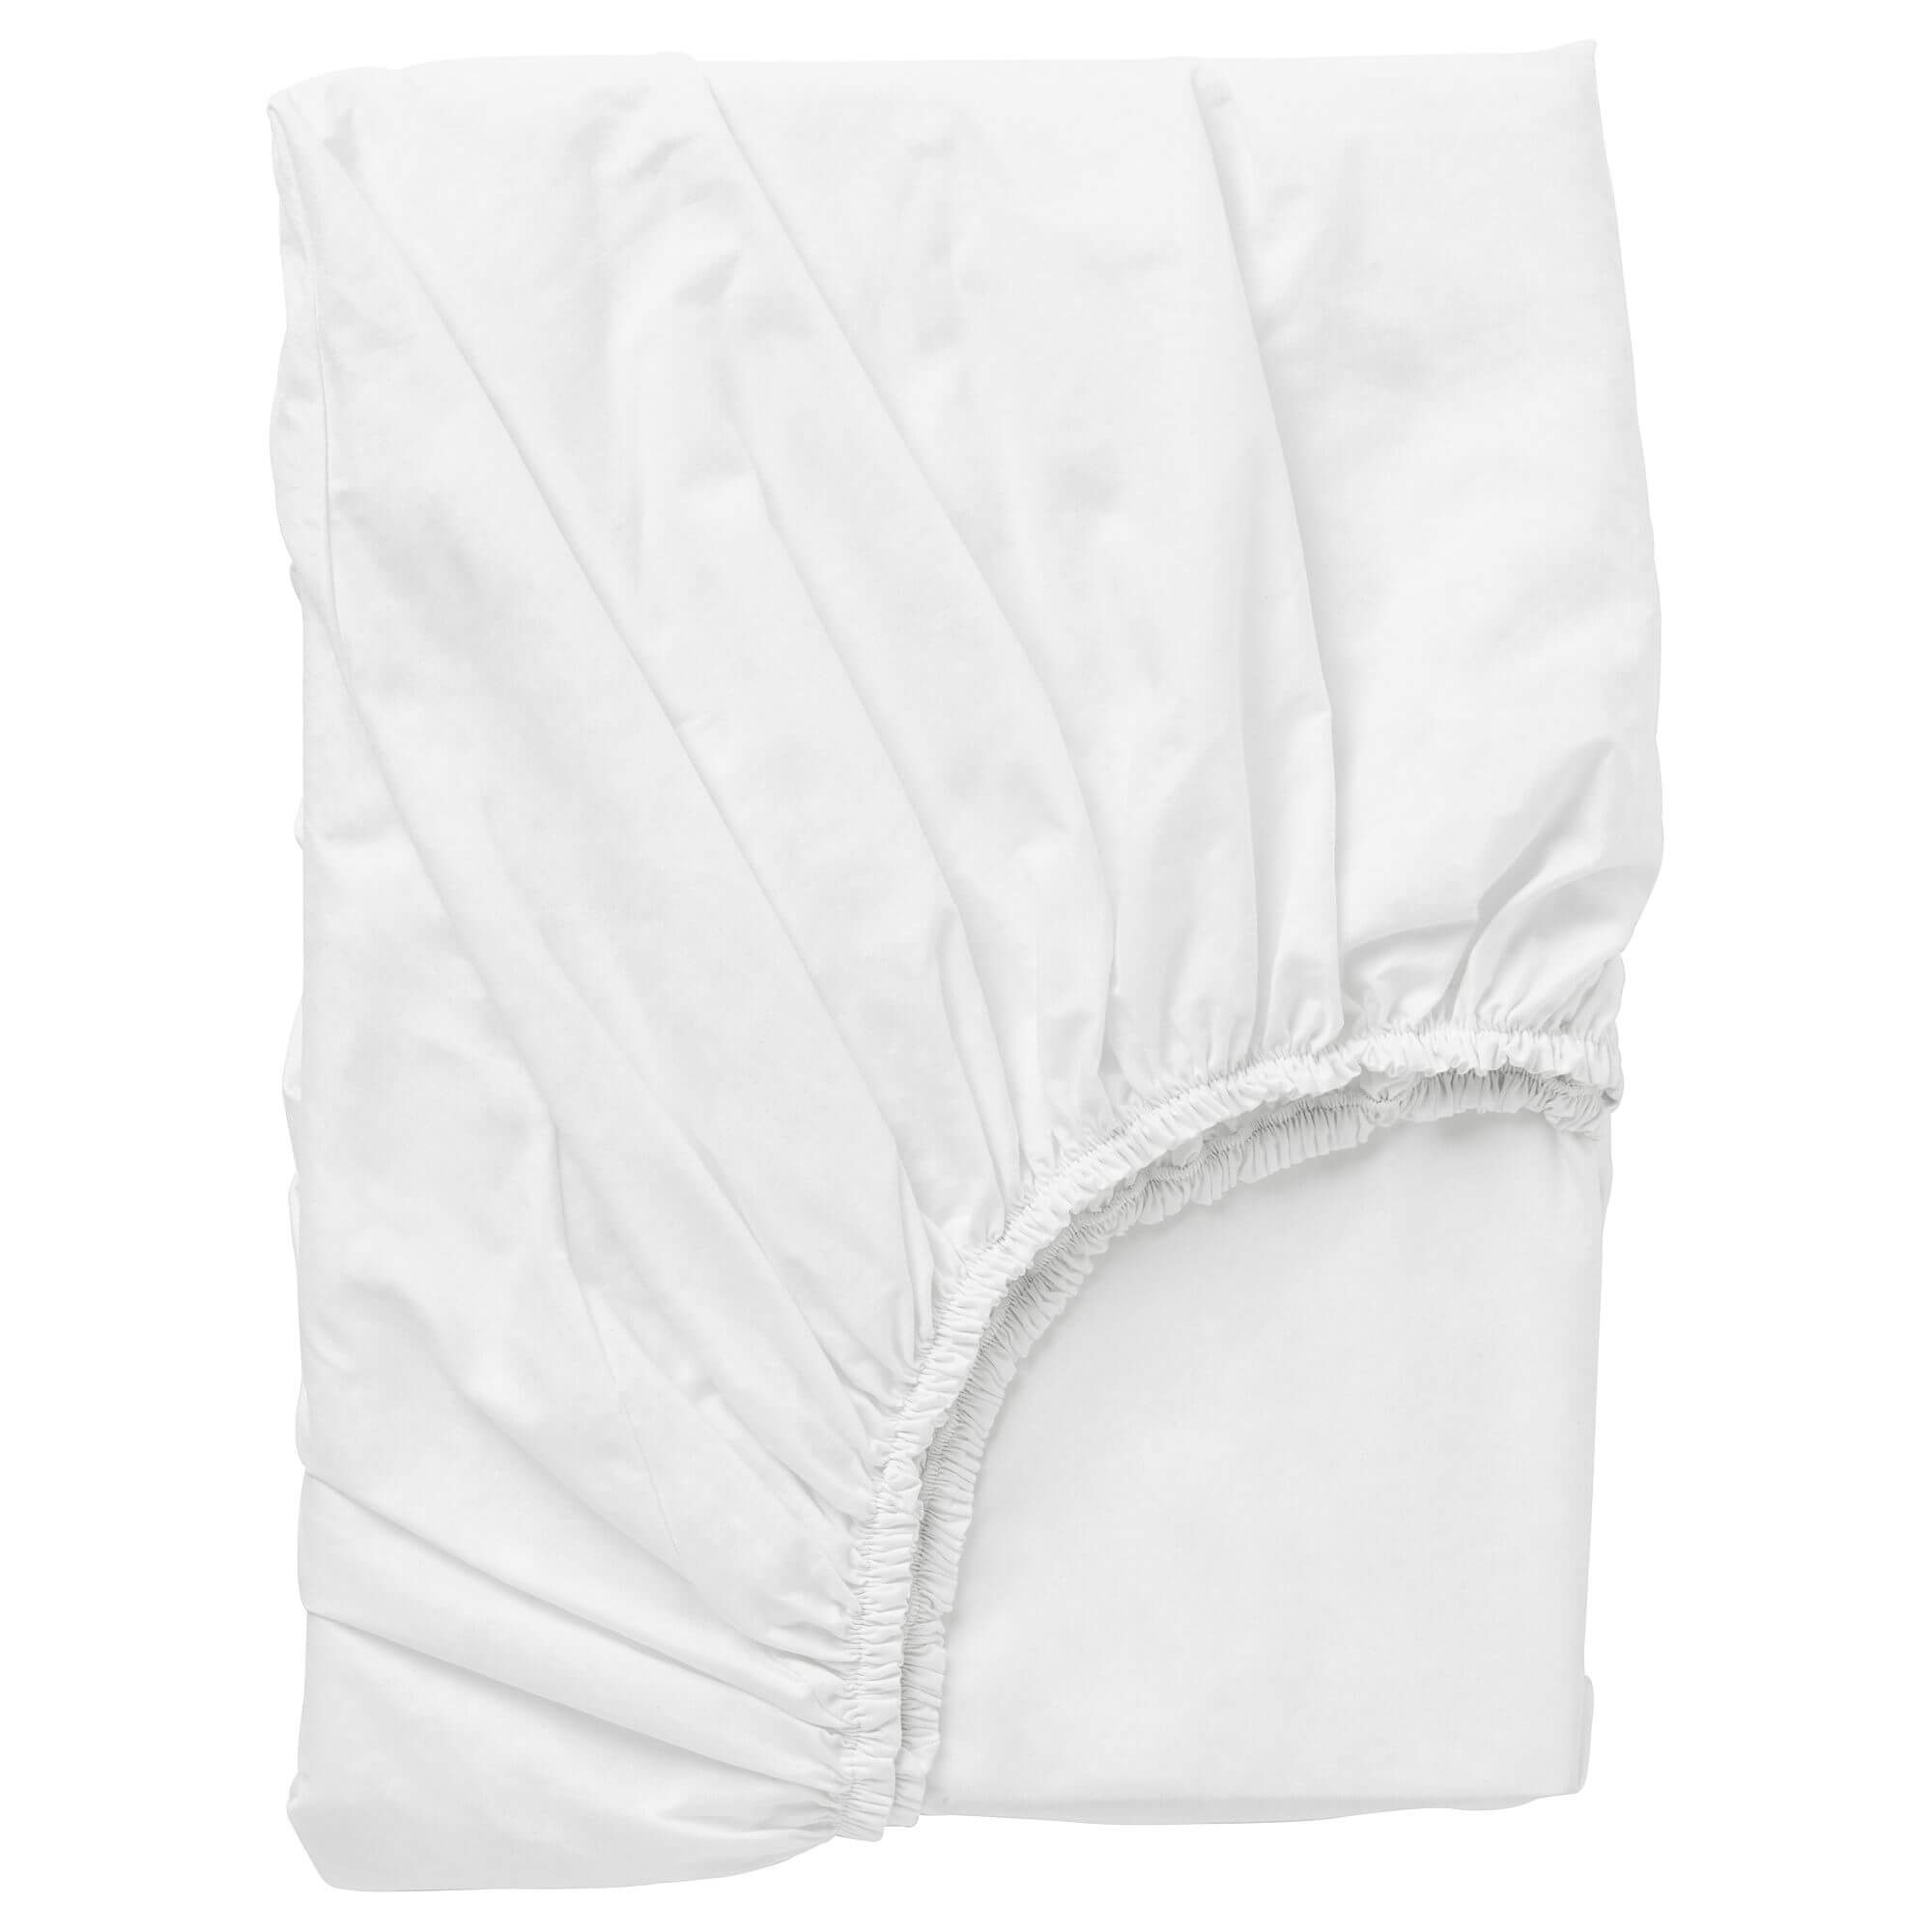 Простыня Ikea Dvala Fitted, 160х200, белый защитная натяжная простыня на матрас из эластичной махровой ткани с прослойкой из полиуретана 60 x 140 см белый